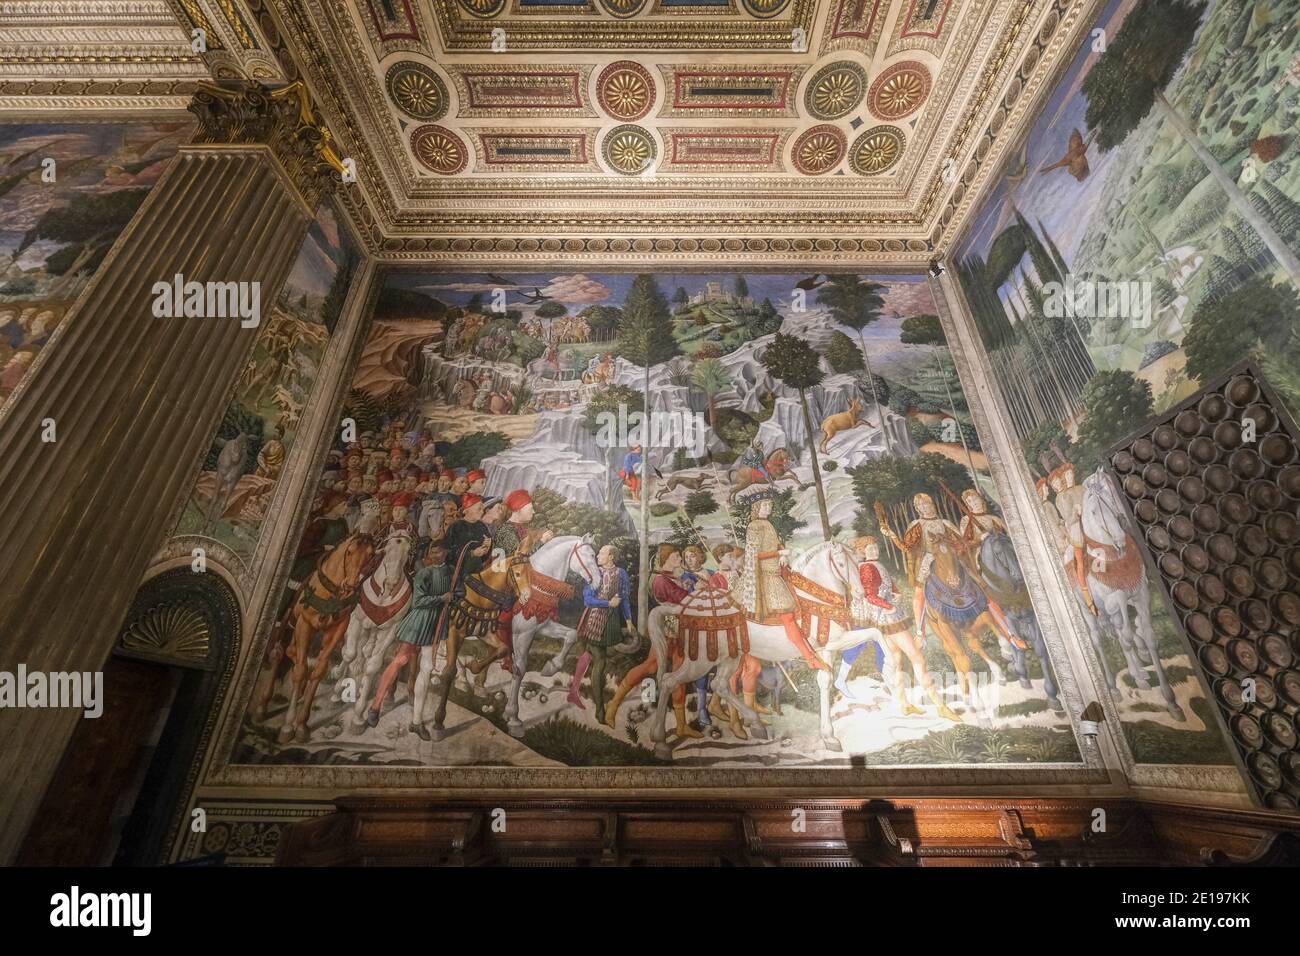 Italien, Toskana: Florenz (Firenze auf Italienisch). Malerei der Prozession der Könige von Benozzo Gozzoli in der Magi-Kapelle, innerhalb der Medici Riccardi P Stockfoto